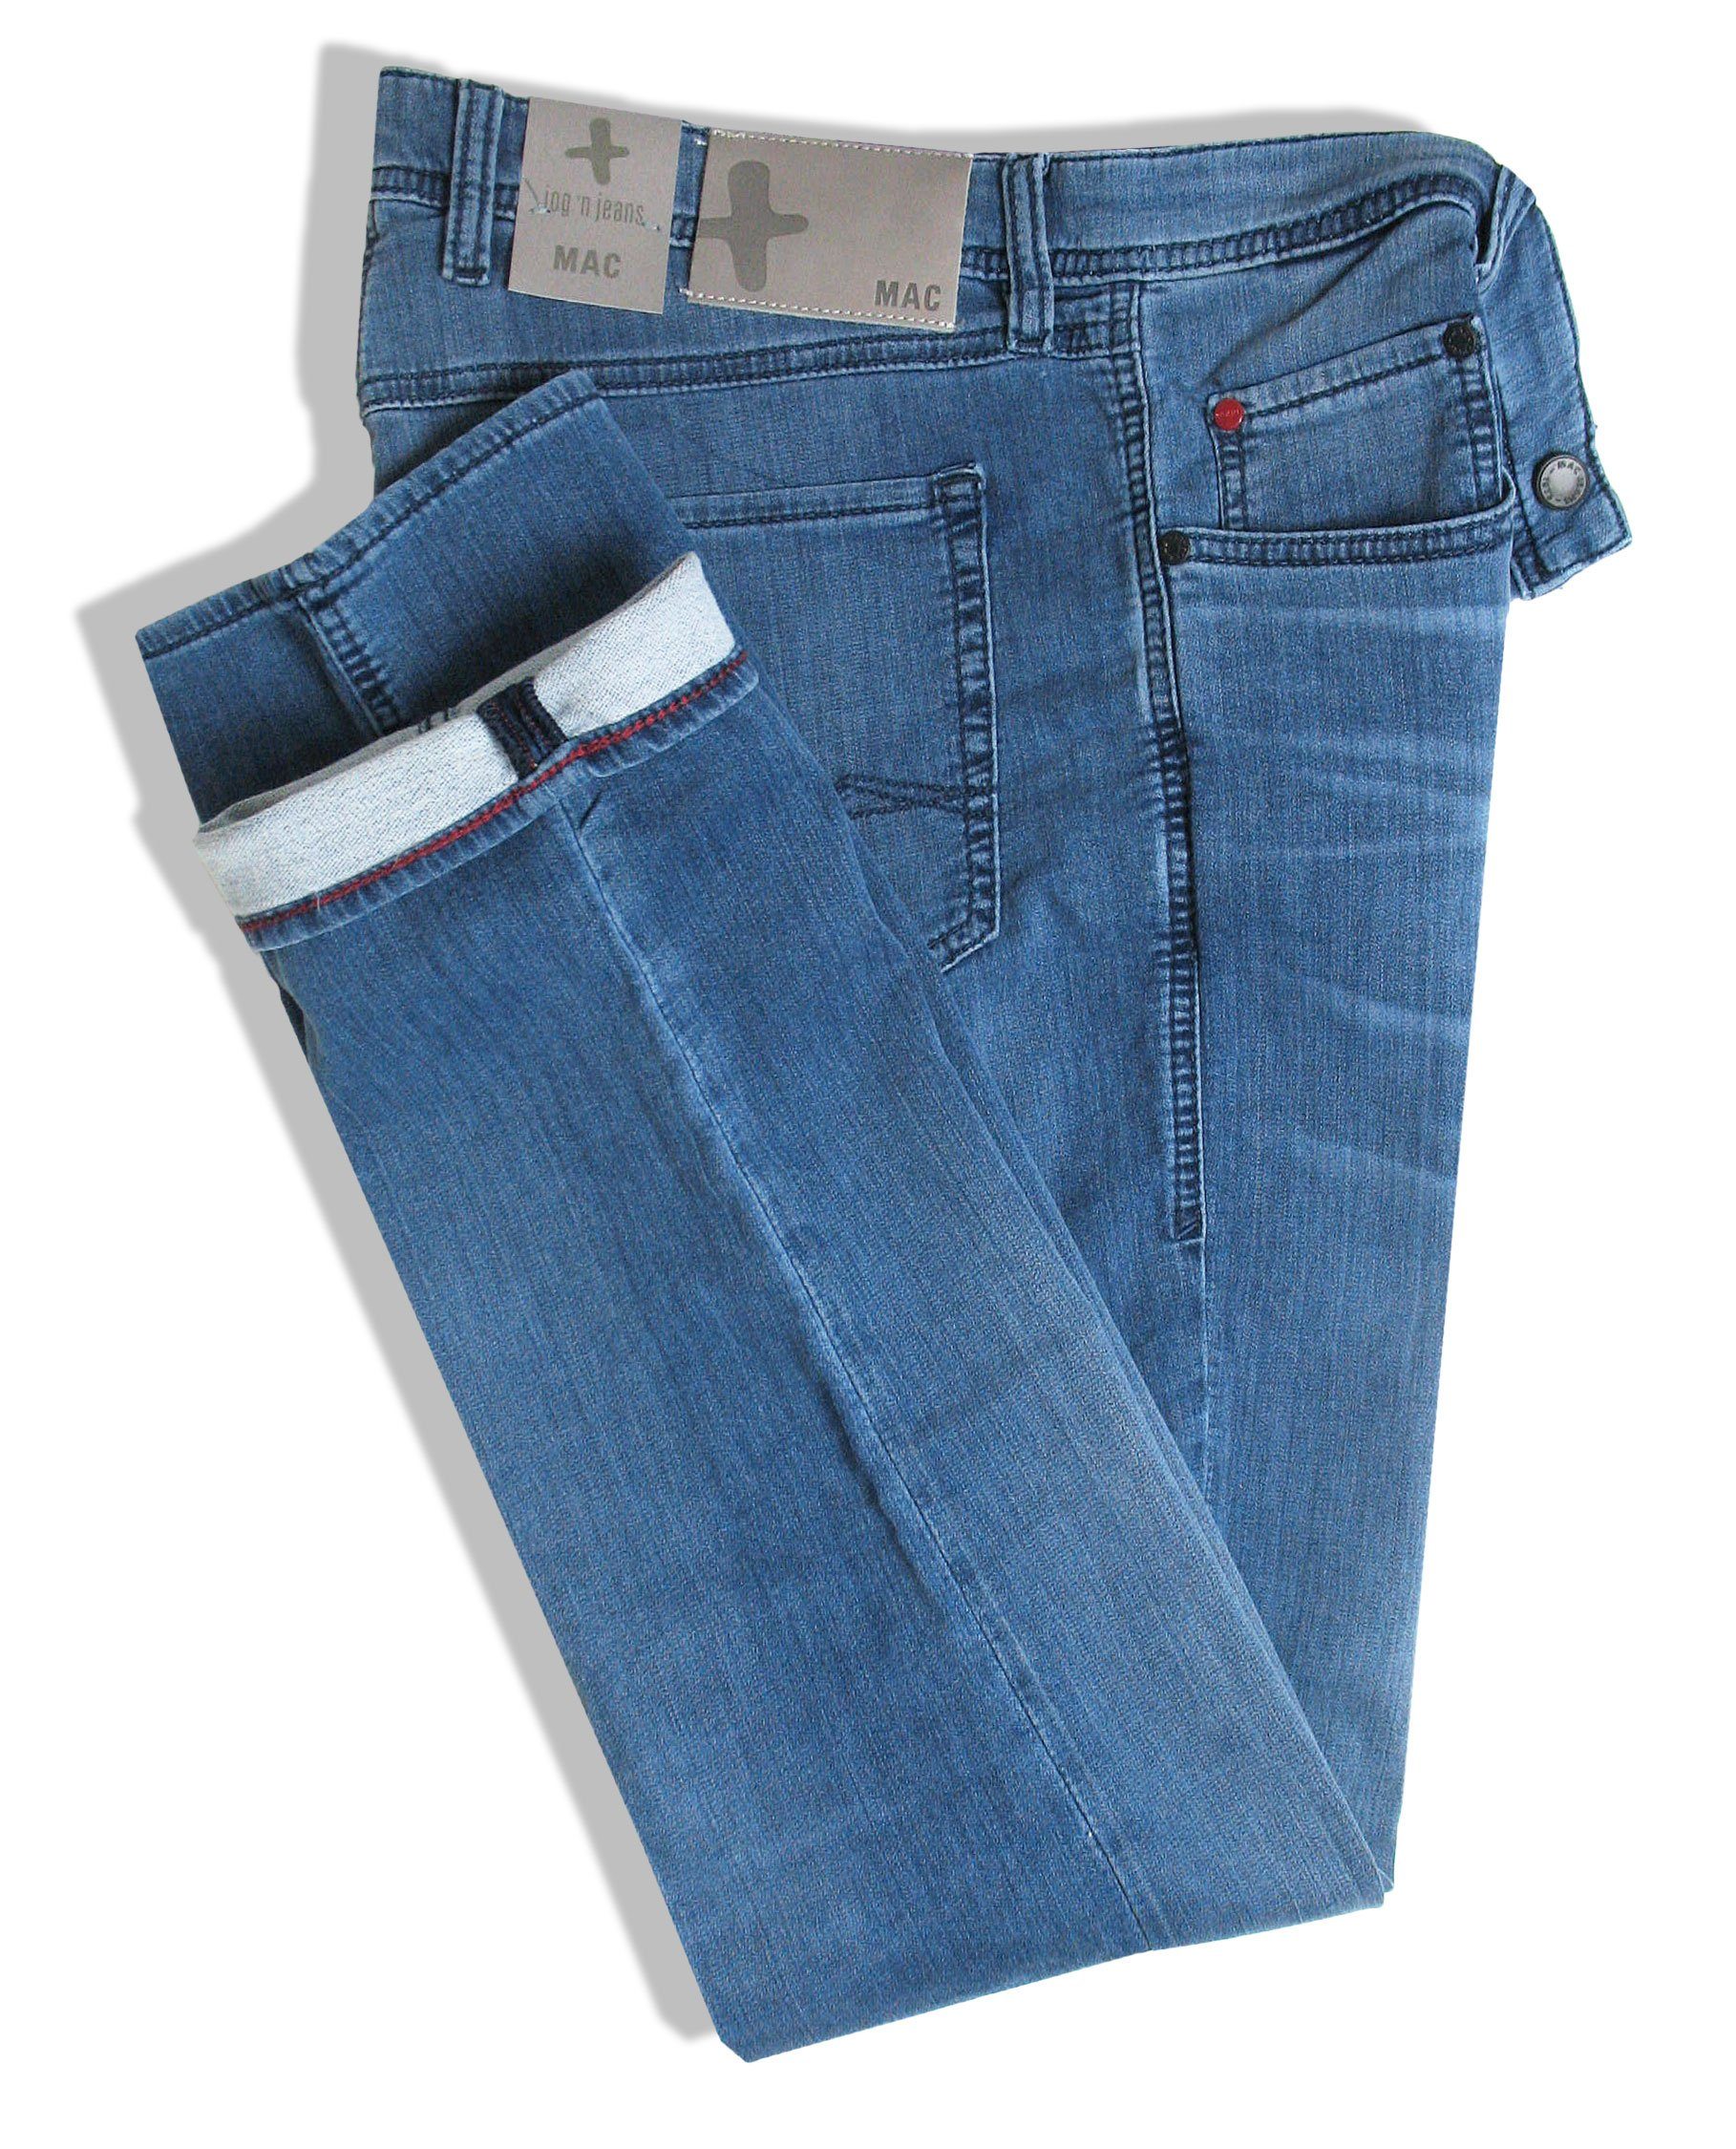 Blue Jog'n Light Stone Jeans 5-Pocket-Jeans 0994L Denim MAC Used Sweat